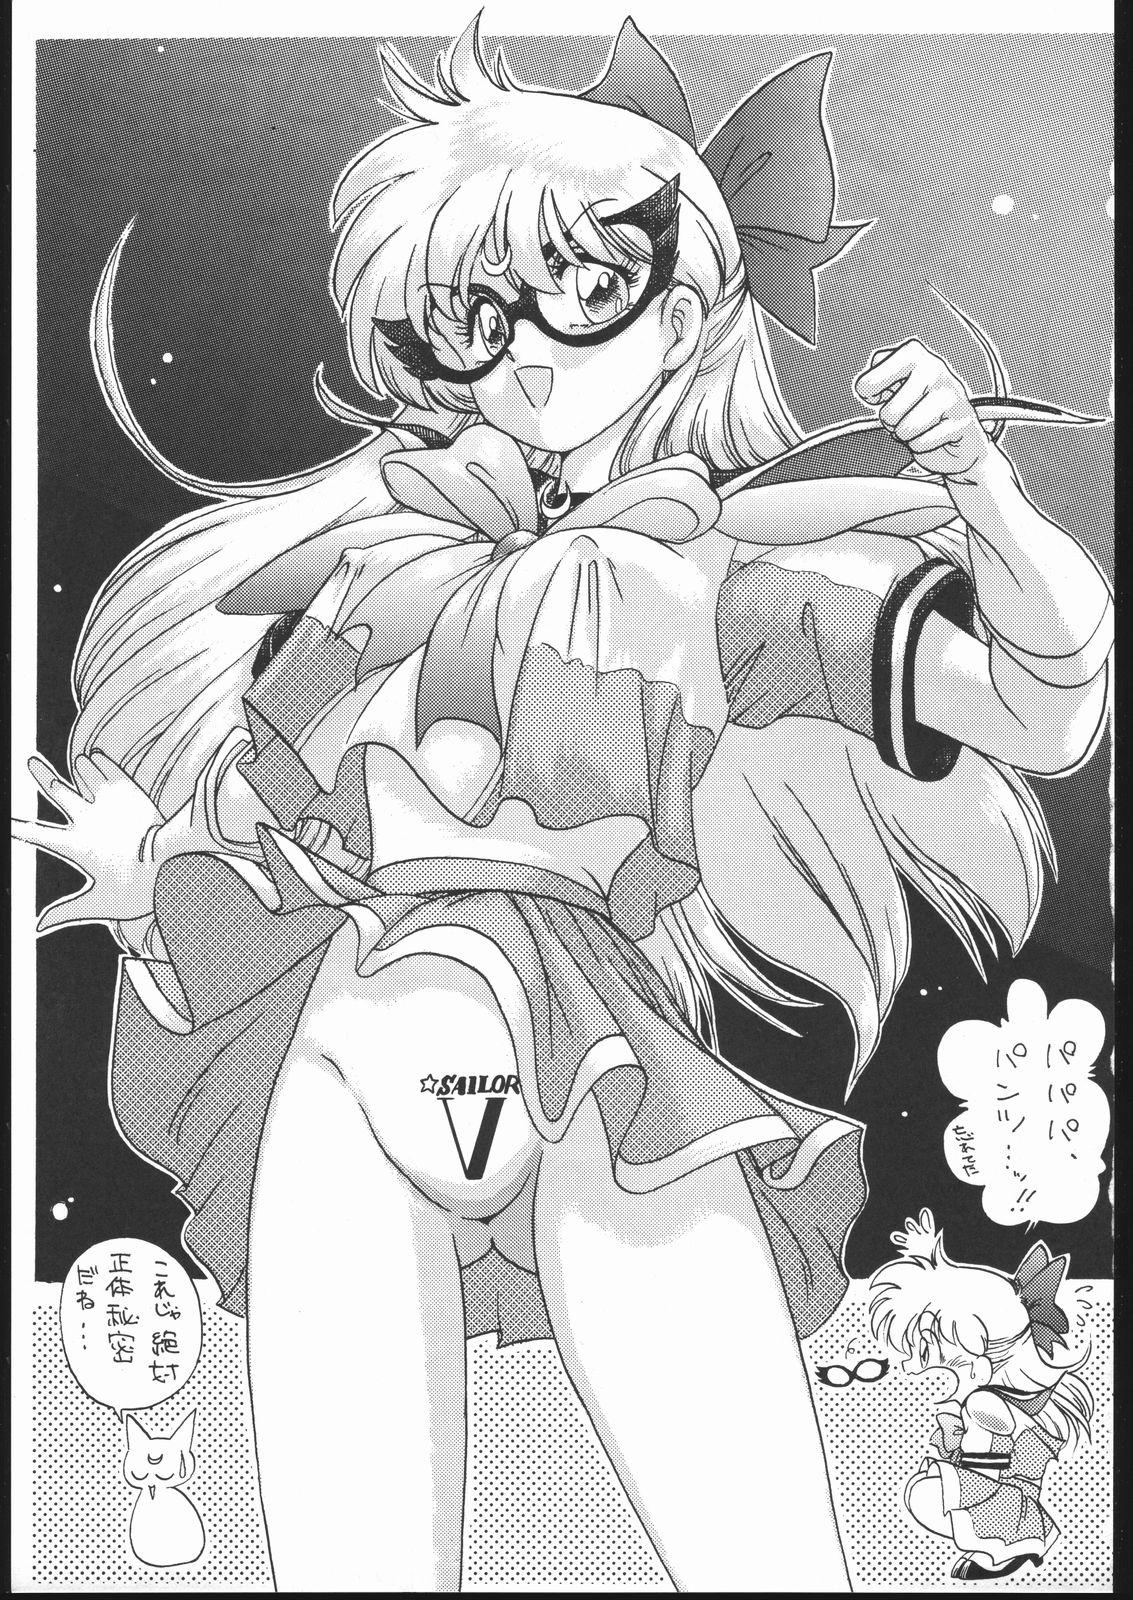 Big Ass Gekkou Endymion 2 - Sailor moon Classic - Page 2